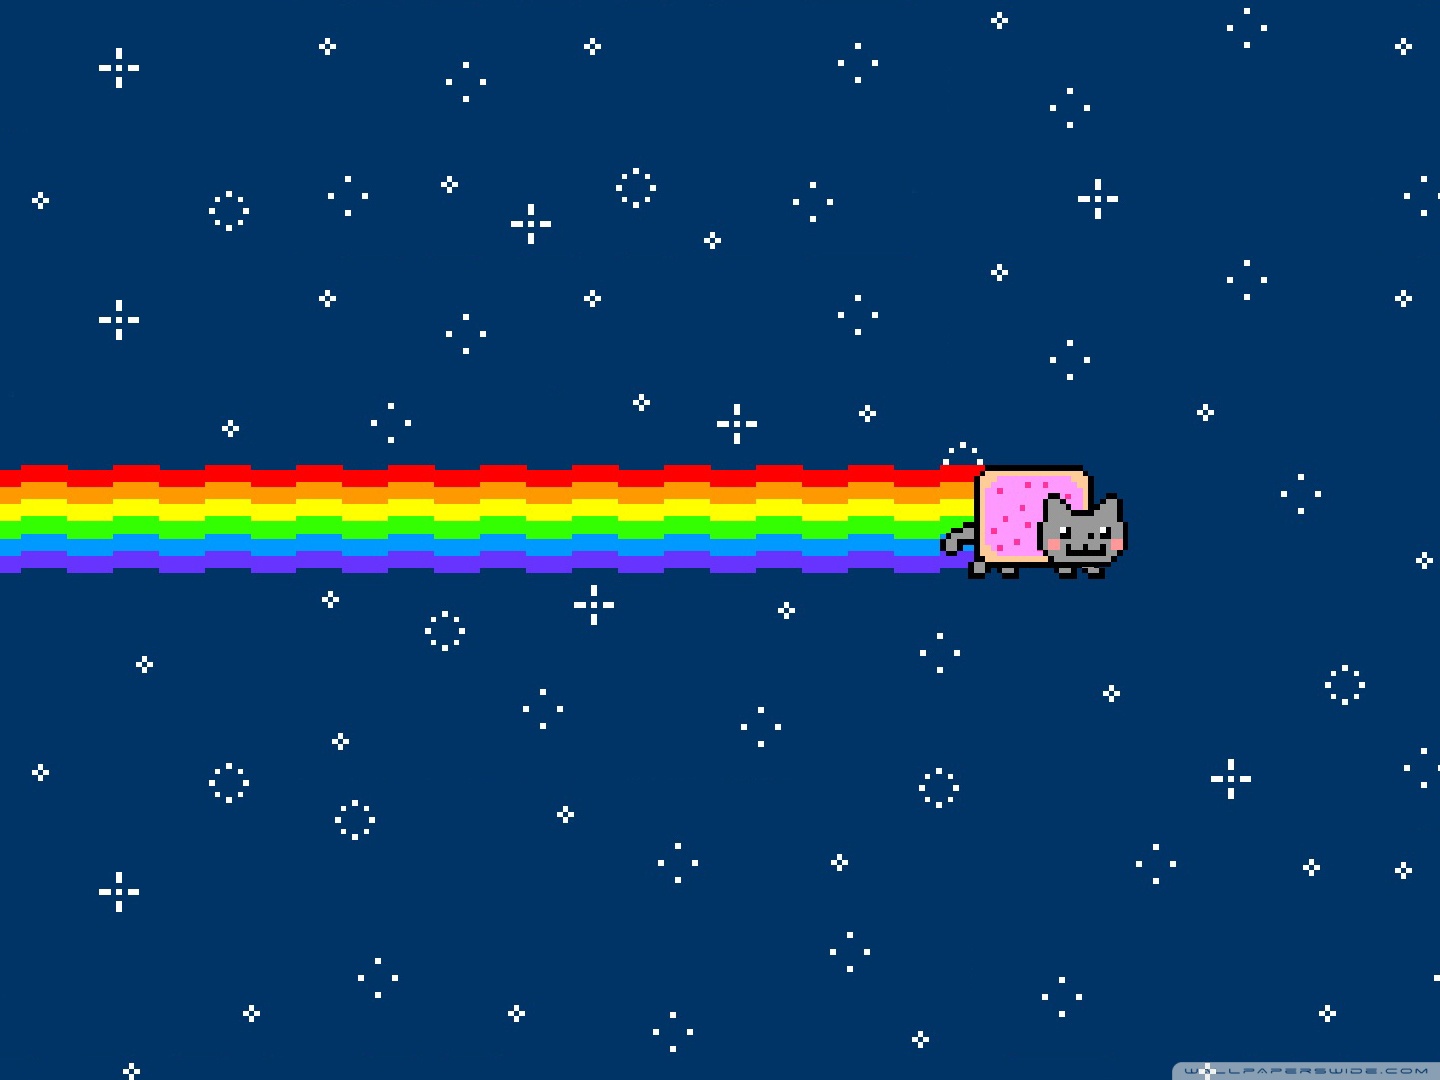 Nyan Cat 4K HD Desktop Wallpaper là một tác phẩm nghệ thuật thú vị đến từ quá khứ. Hãy cùng nhau đồng hành với Nyan Cat trong một thế giới đầy sắc màu và khám phá nhiều điều thú vị.